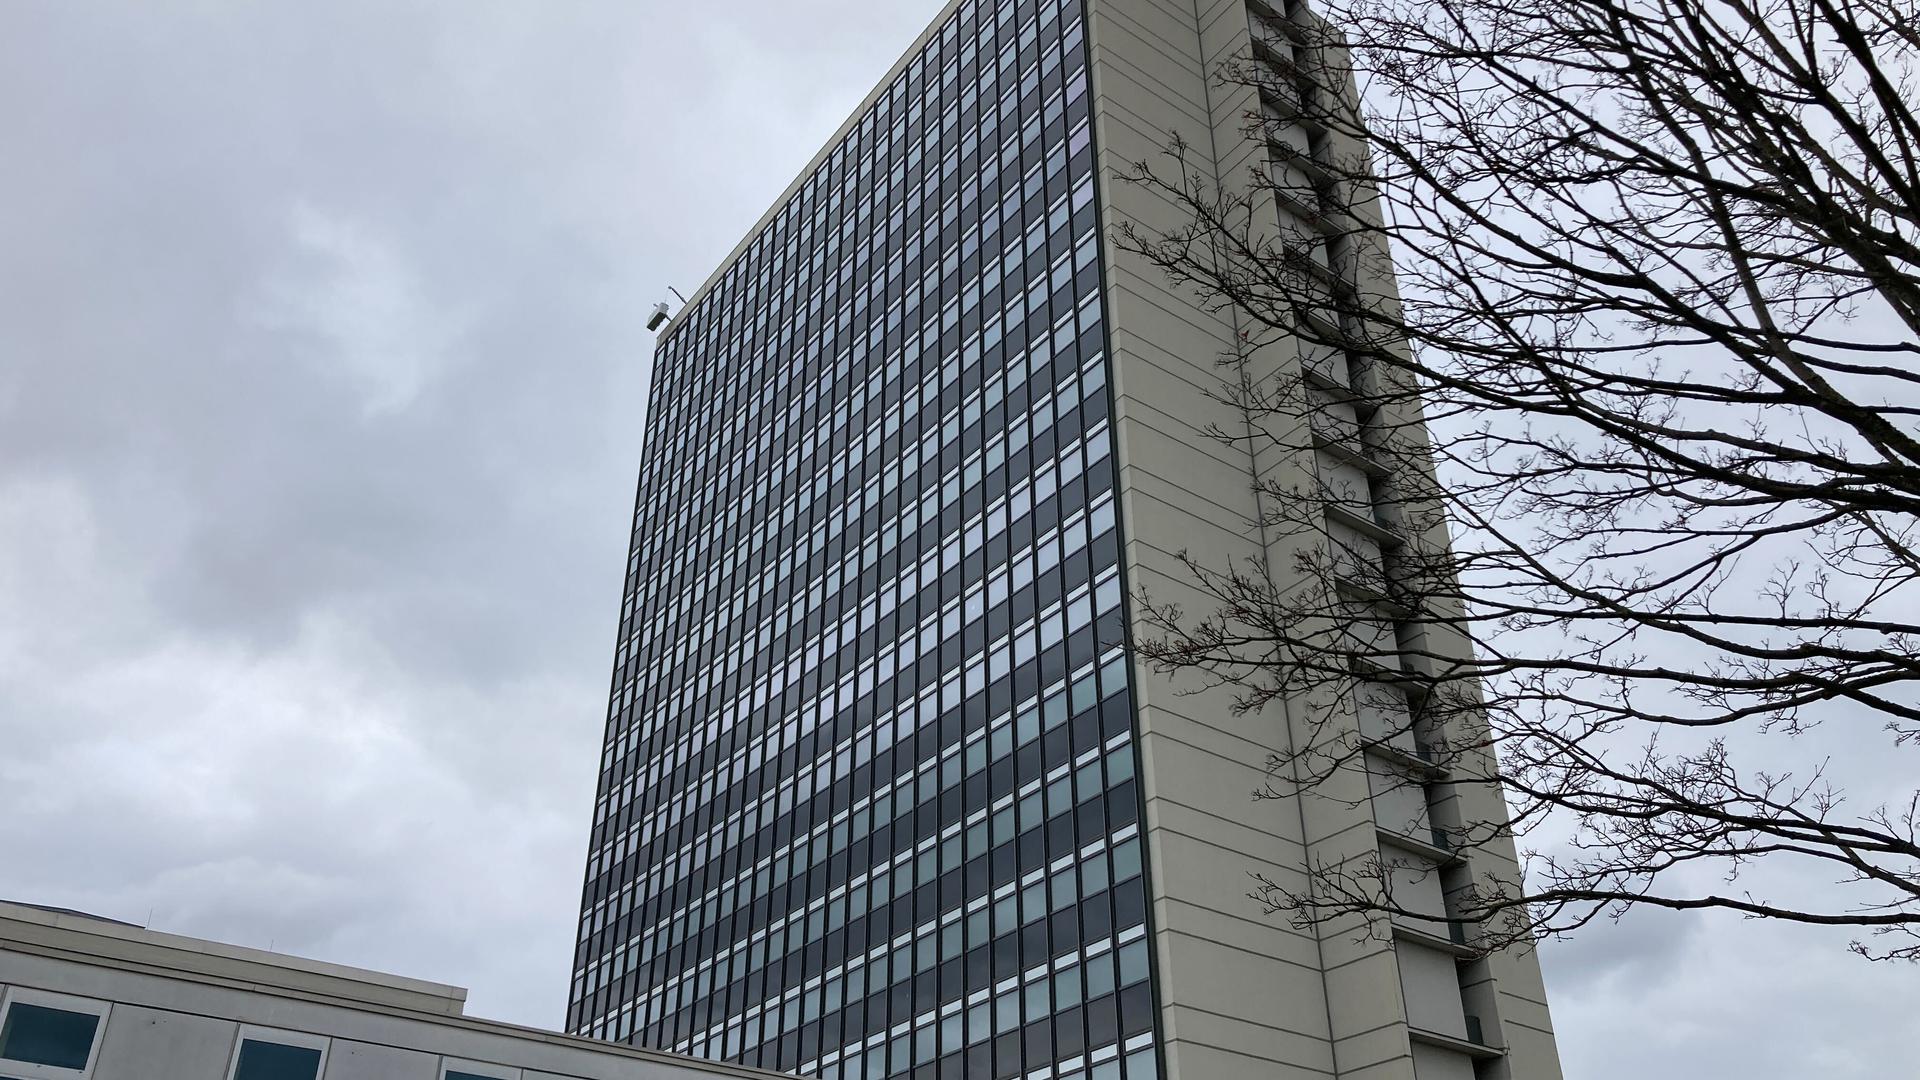 Wegen eines technischen Defekts war die Gondel gegen 10.11 Uhr bei Arbeiten am 21. Stock des Hochhauses der Deutschen Rentenversicherung in Karlsruhe stecken geblieben. 